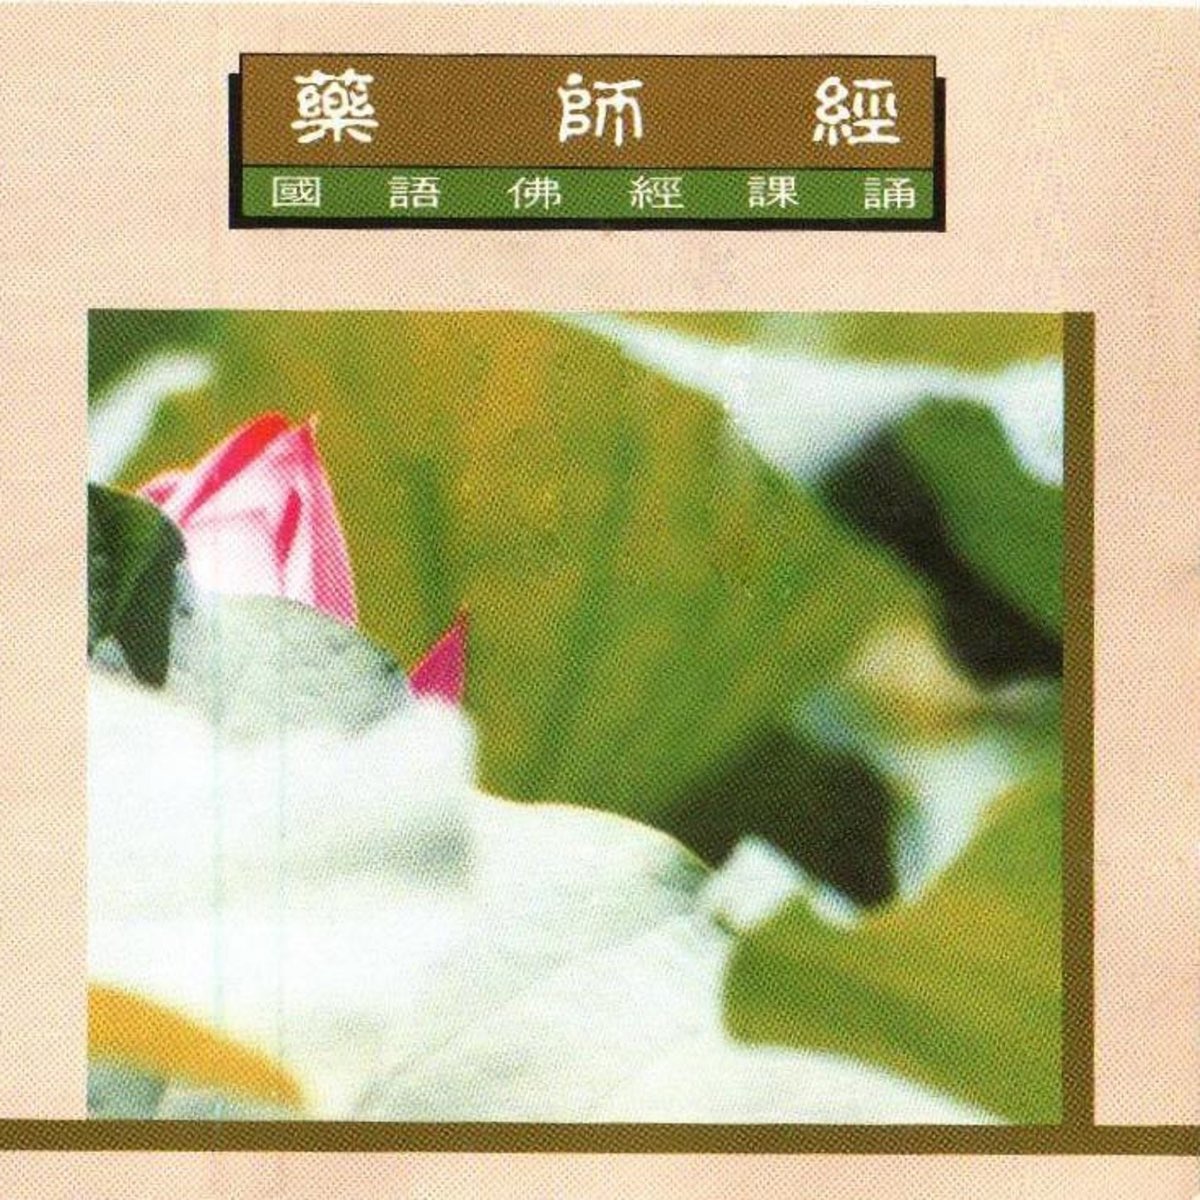 ‎《国语佛经课诵-地藏王菩萨本愿经(上)》- 妙莲华的专辑 - Apple Music